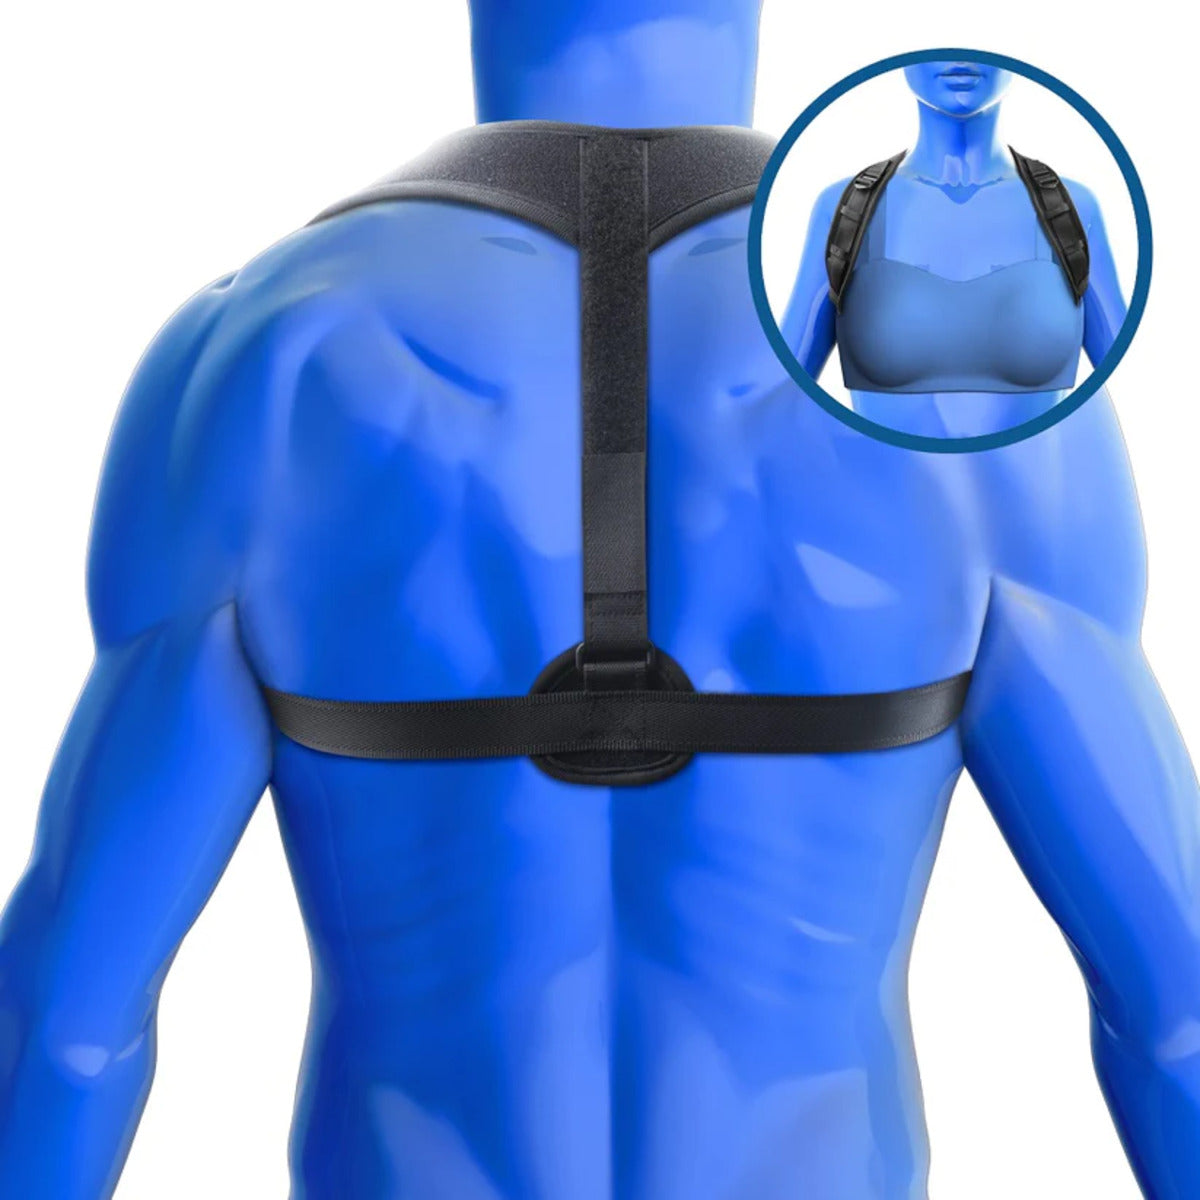 KEDLEY Posture Corrector for Men and Women | Adjustable Upper Back Brace for Clavicle Support